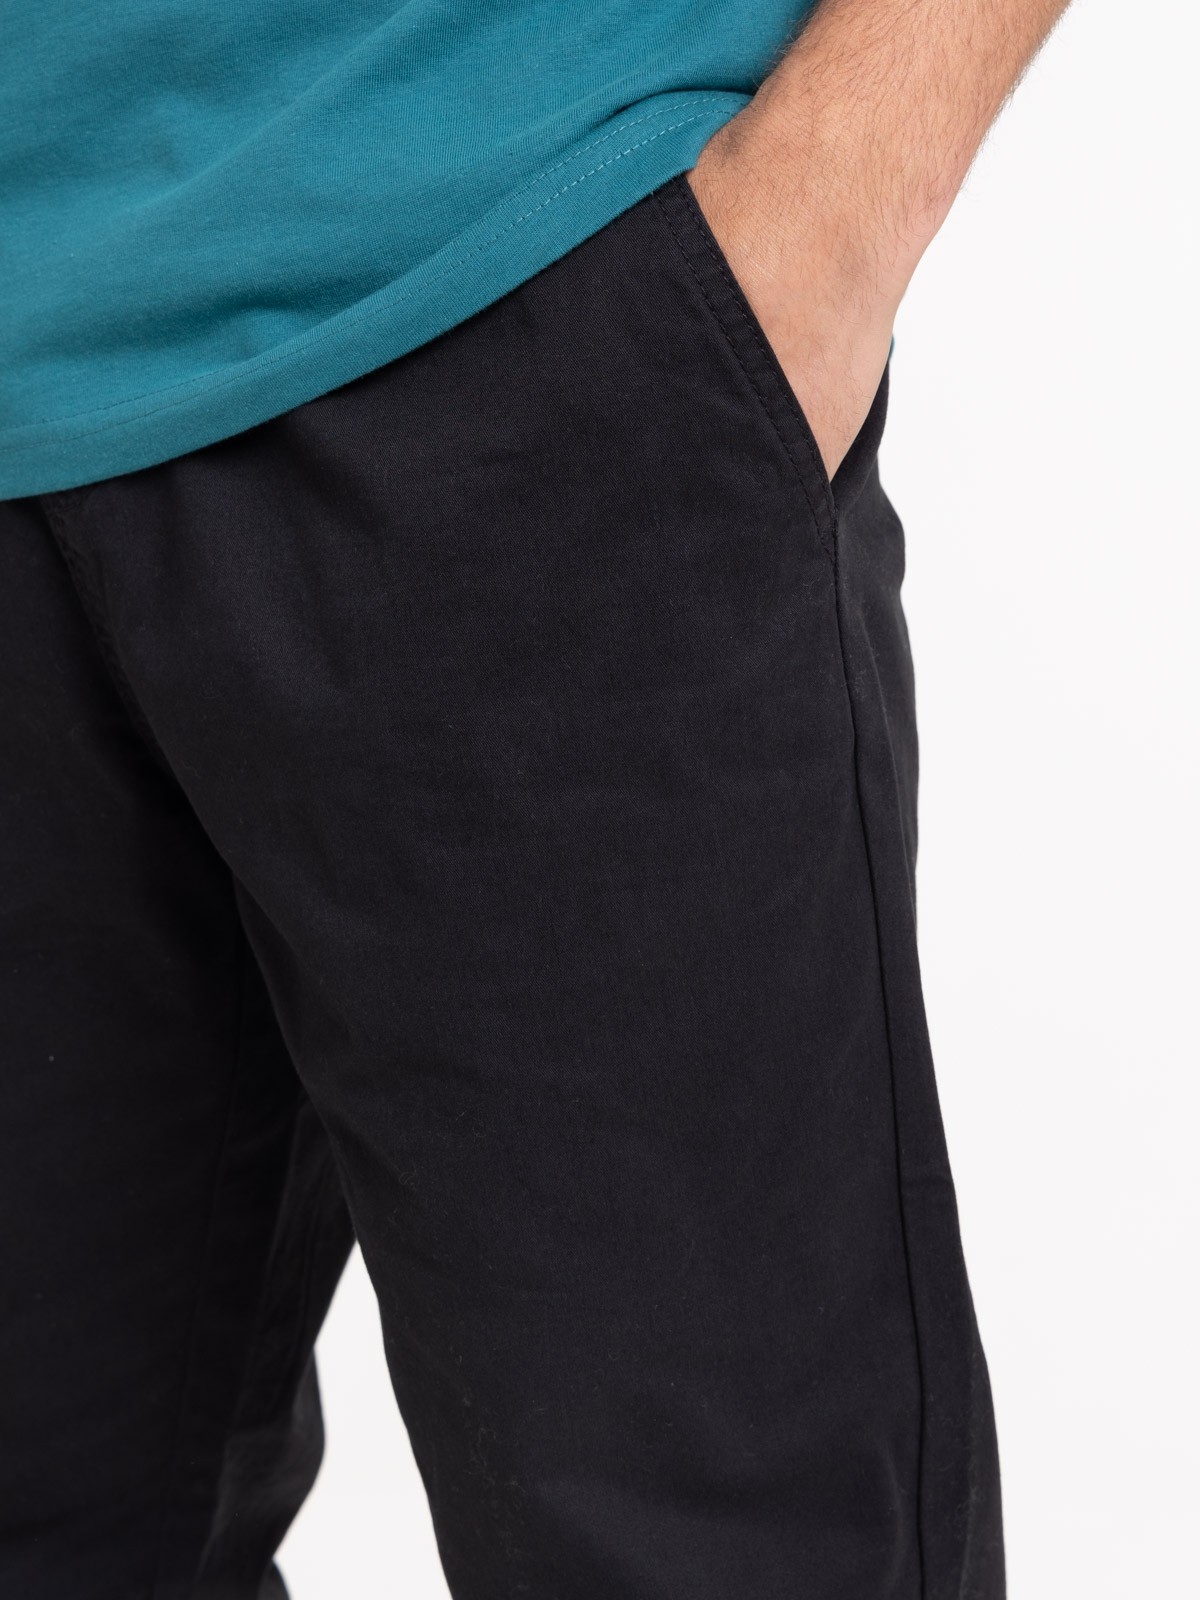 Pantalon 100% coton noir homme - DistriCenter